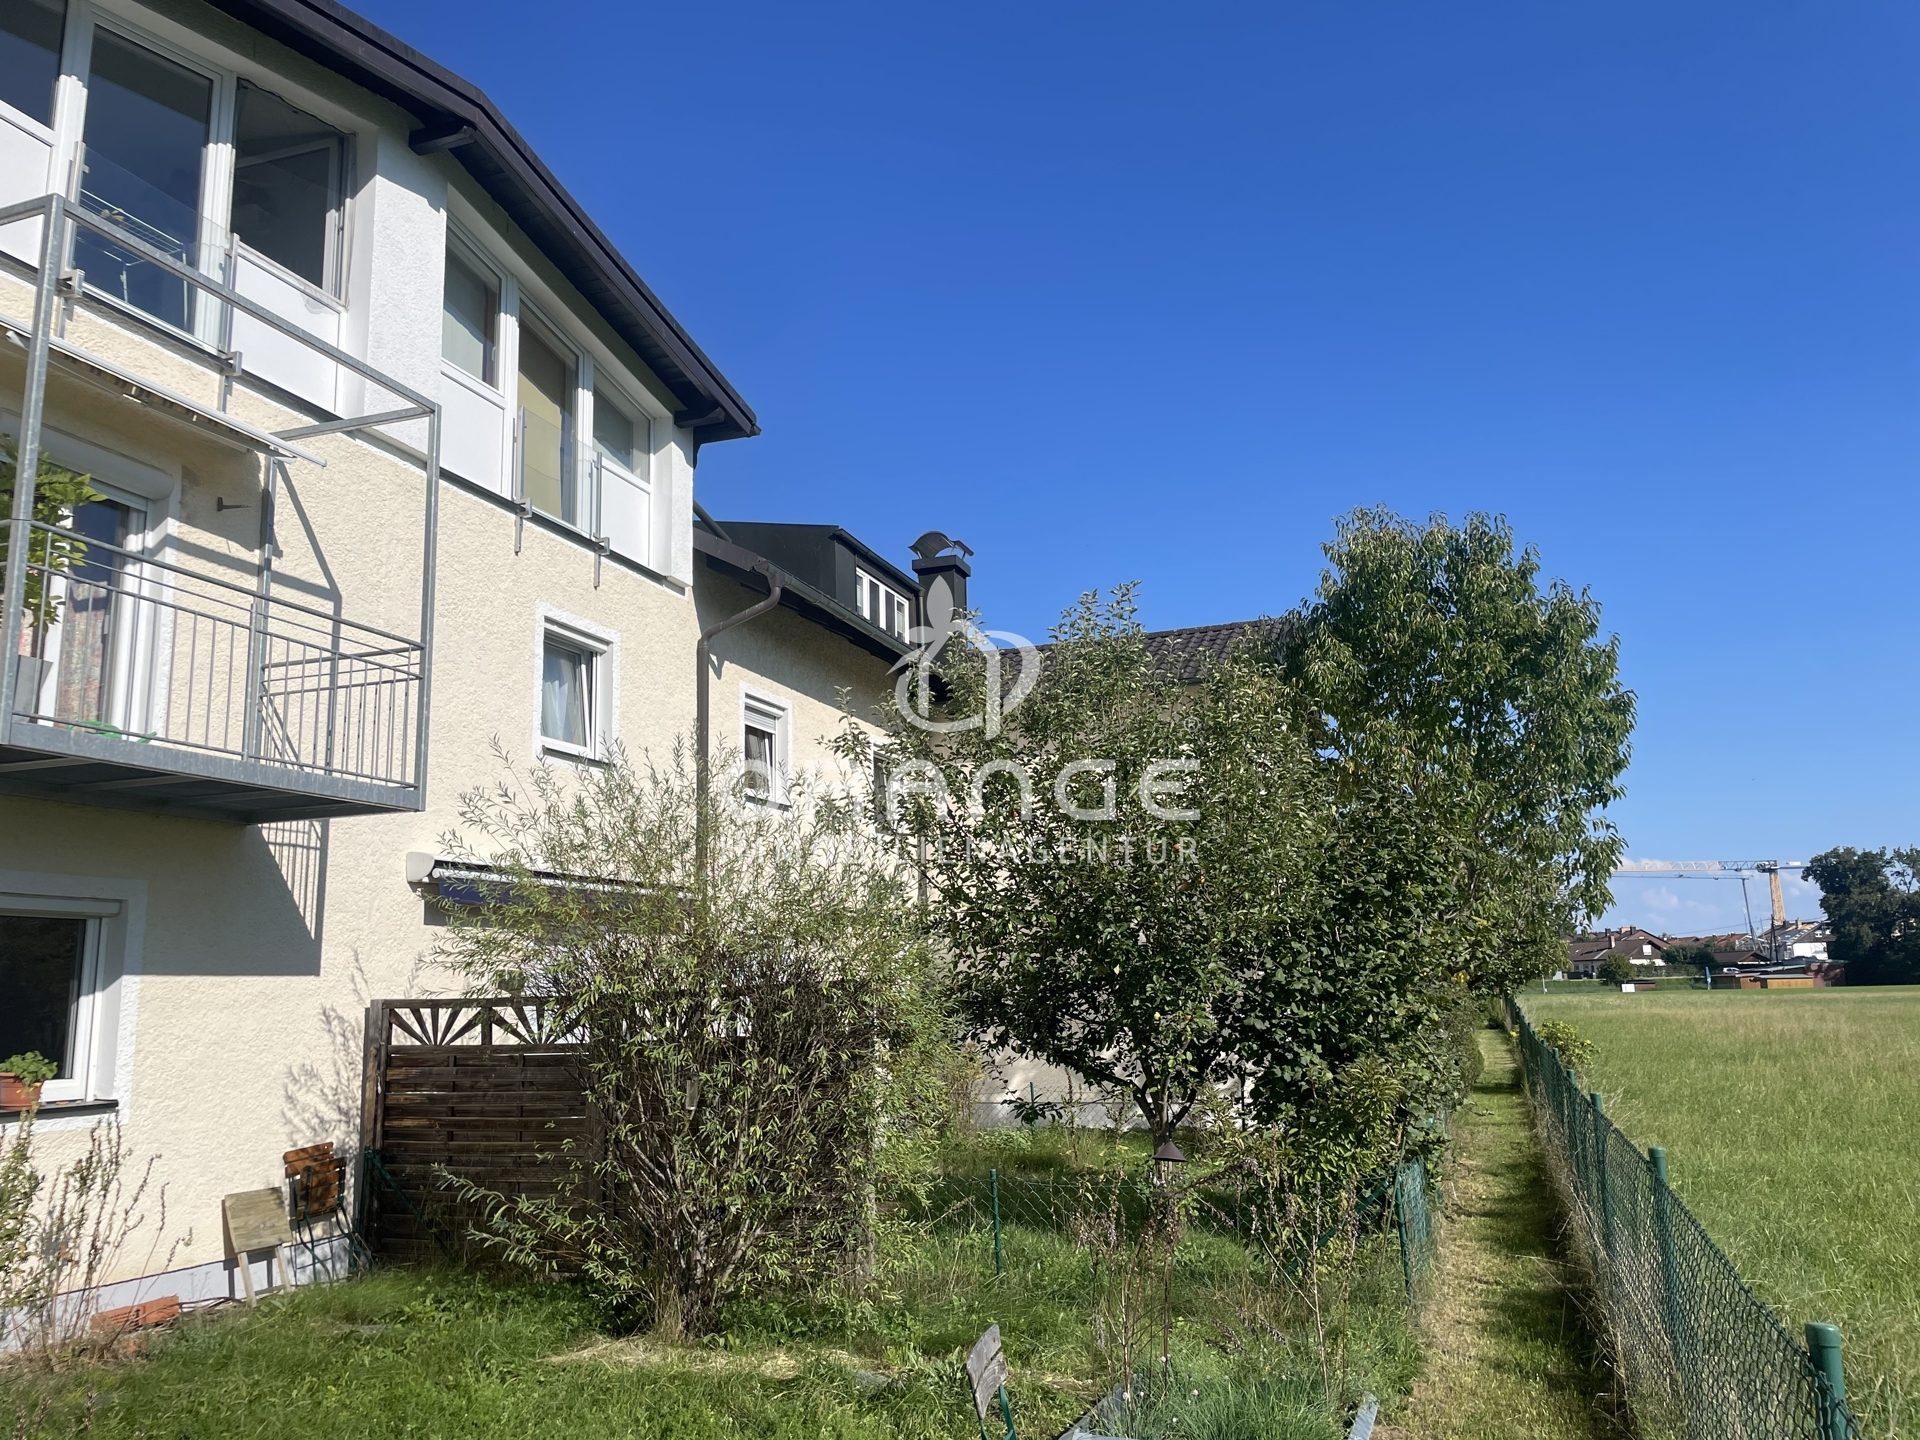 Immobilienangebot - Wolfratshausen / Weidach - Alle - KLEIN ABER MEIN - 1,5 ZIMMER IN WOLFRATSHAUSEN - GÜNSTIG KAUFEN MIT ERBBAURECHT